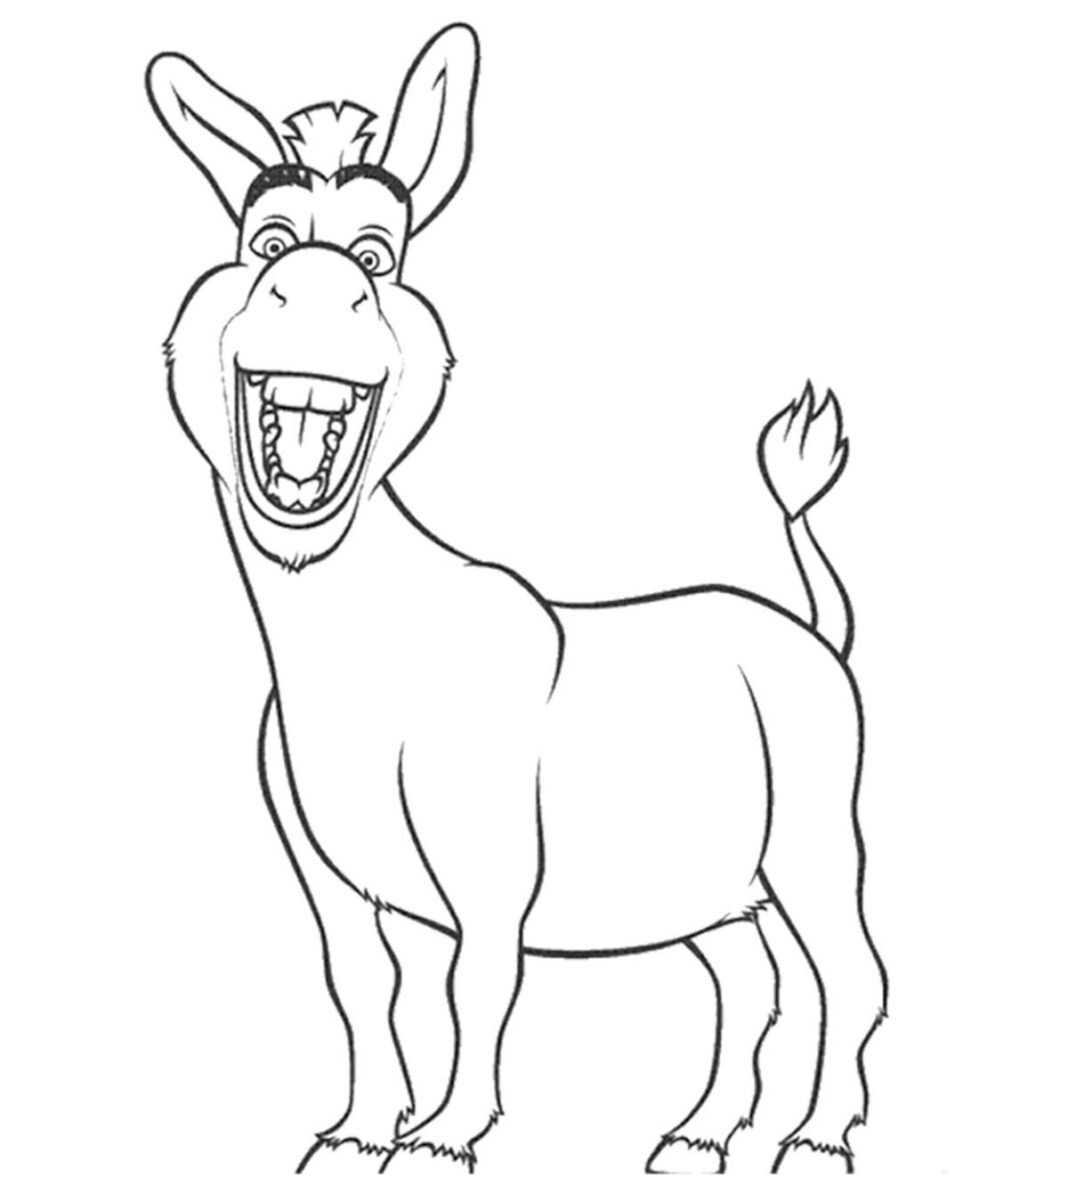 imagem para impressão do burro shrek